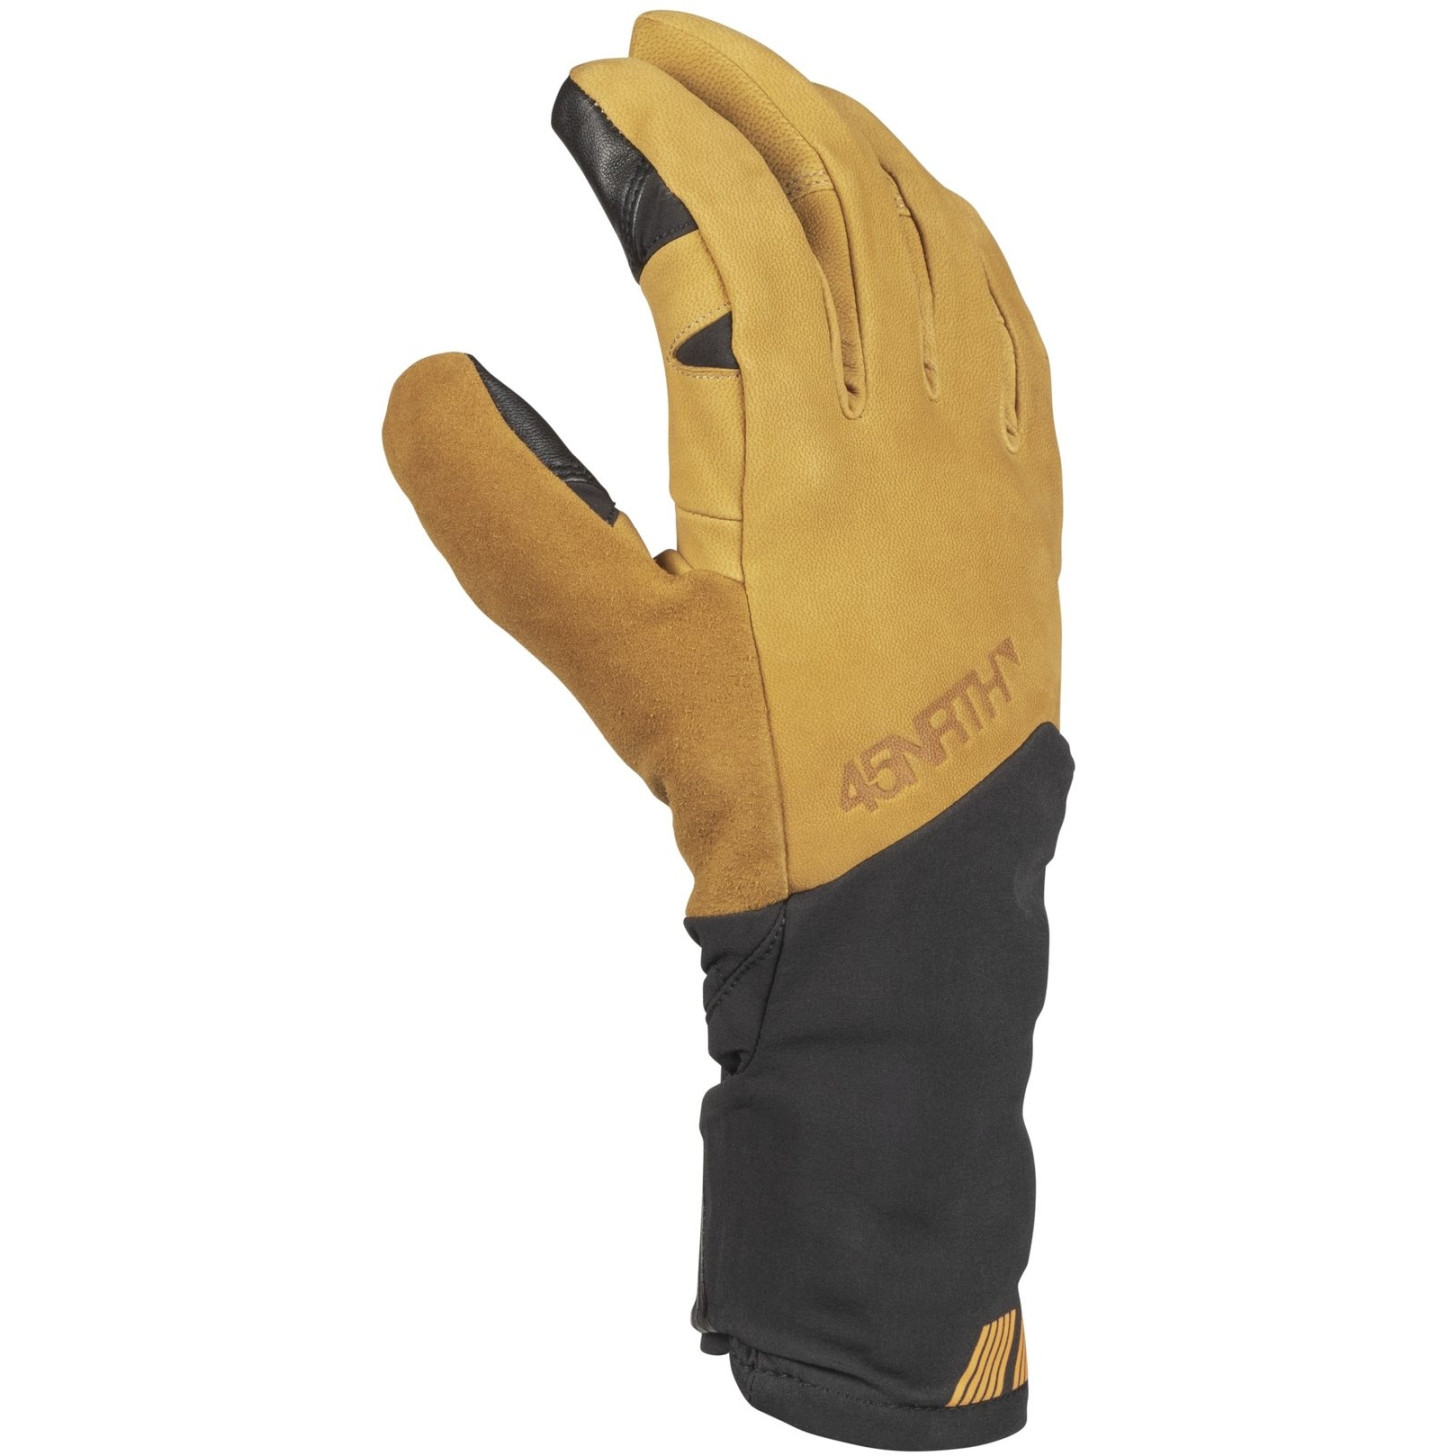 45NRTH Sturmfist 5 Finger Glove - Tan (2021)